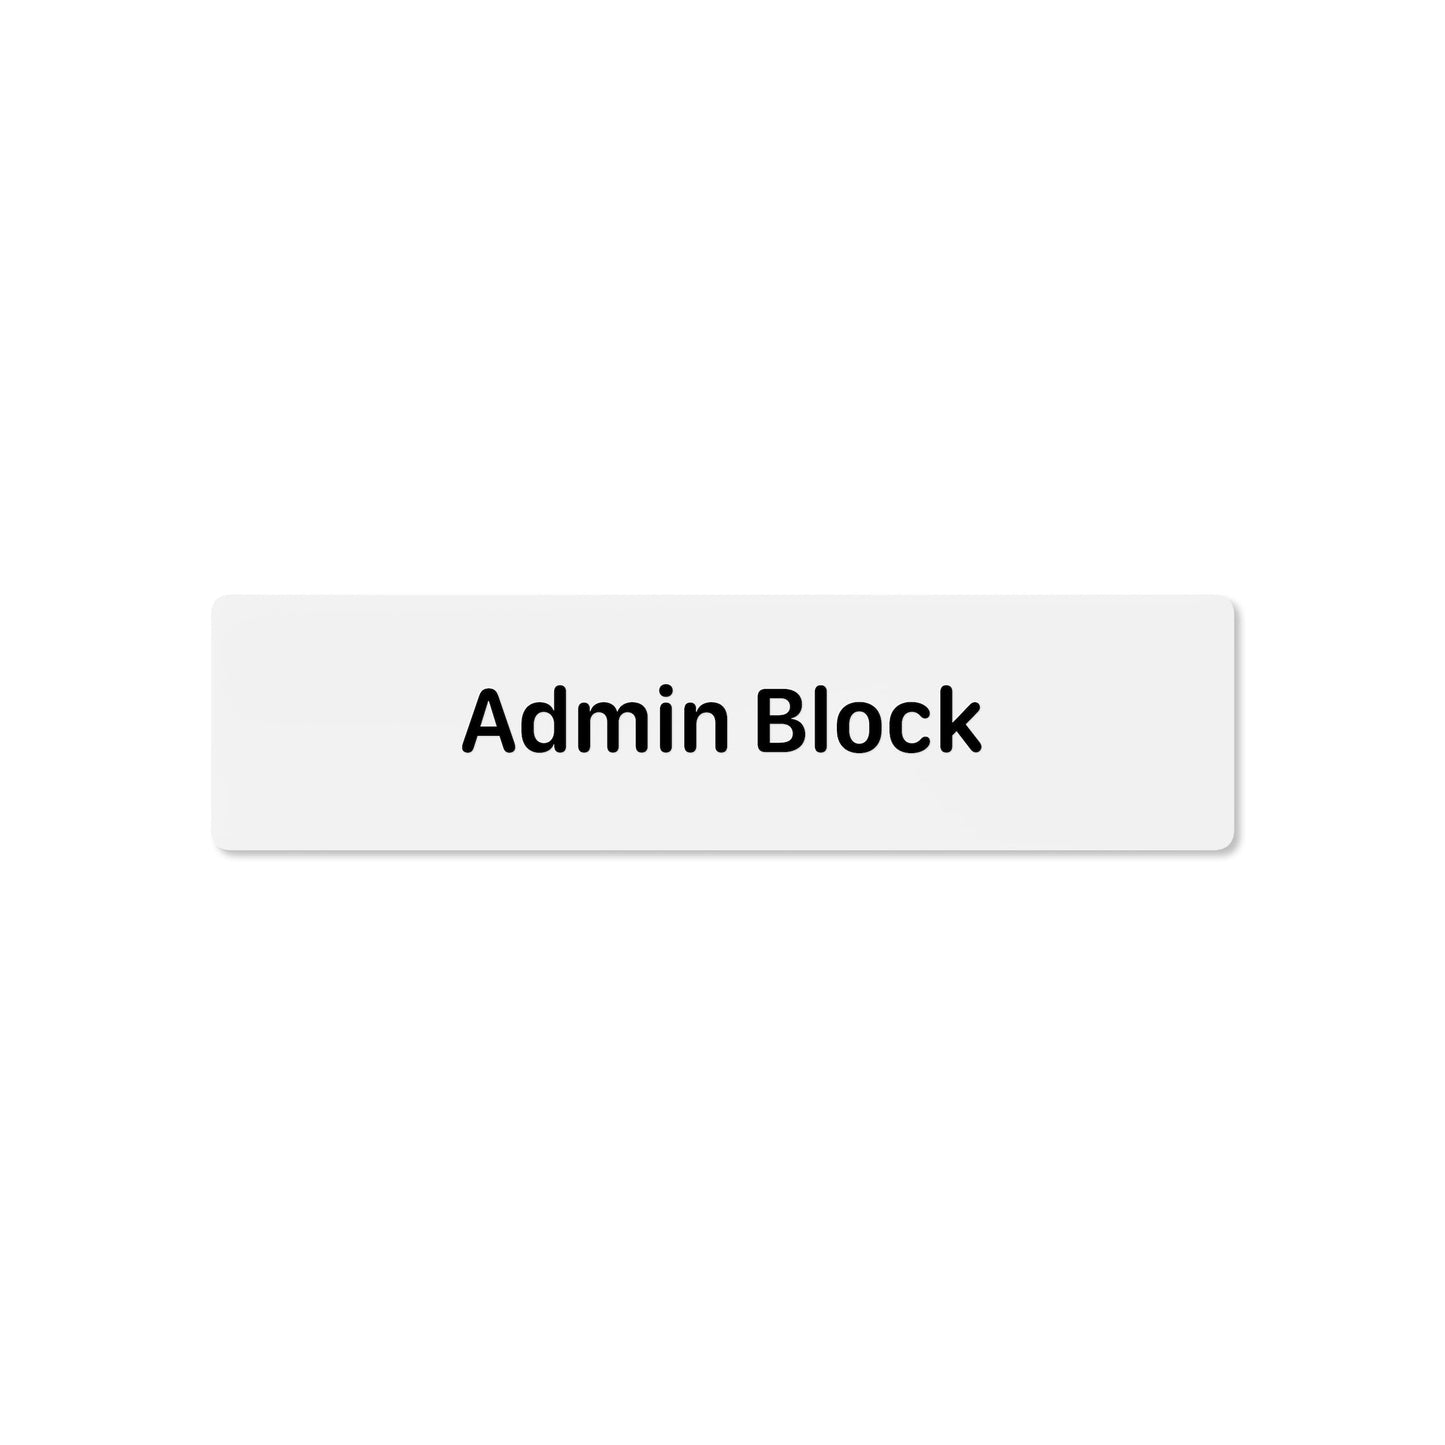 Admin Block